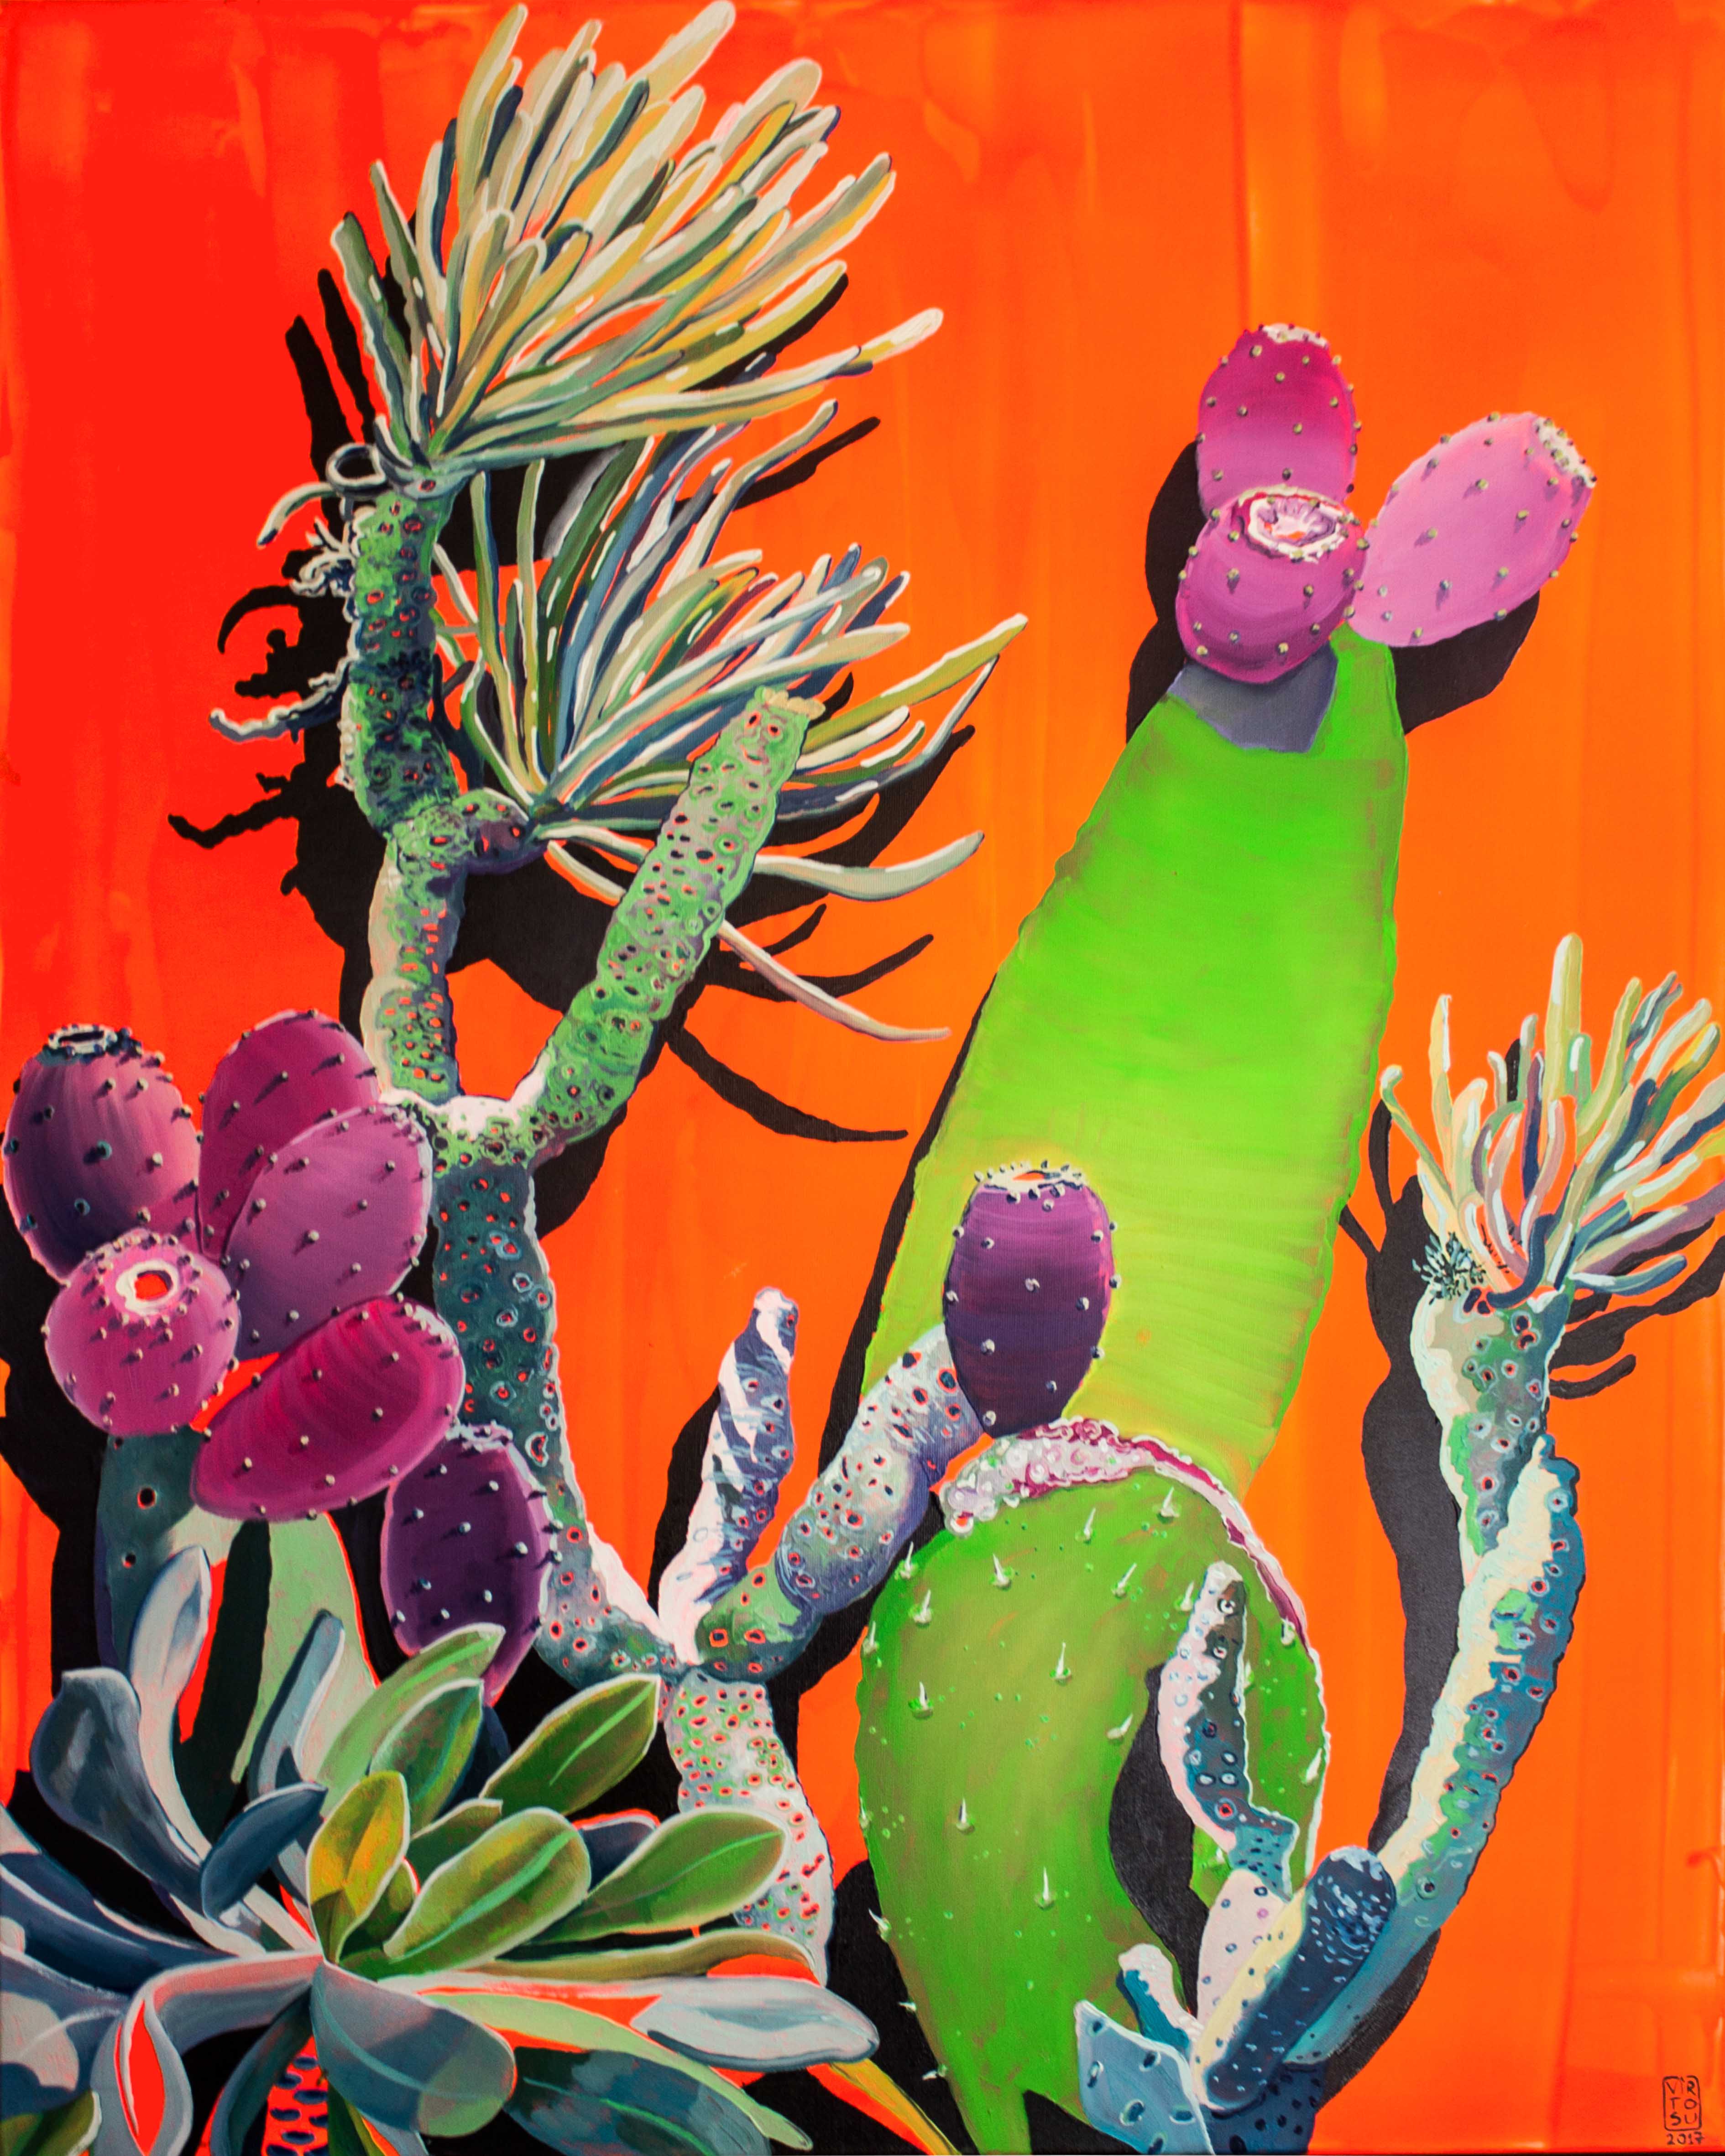 Cactusses on phosphorescent orange